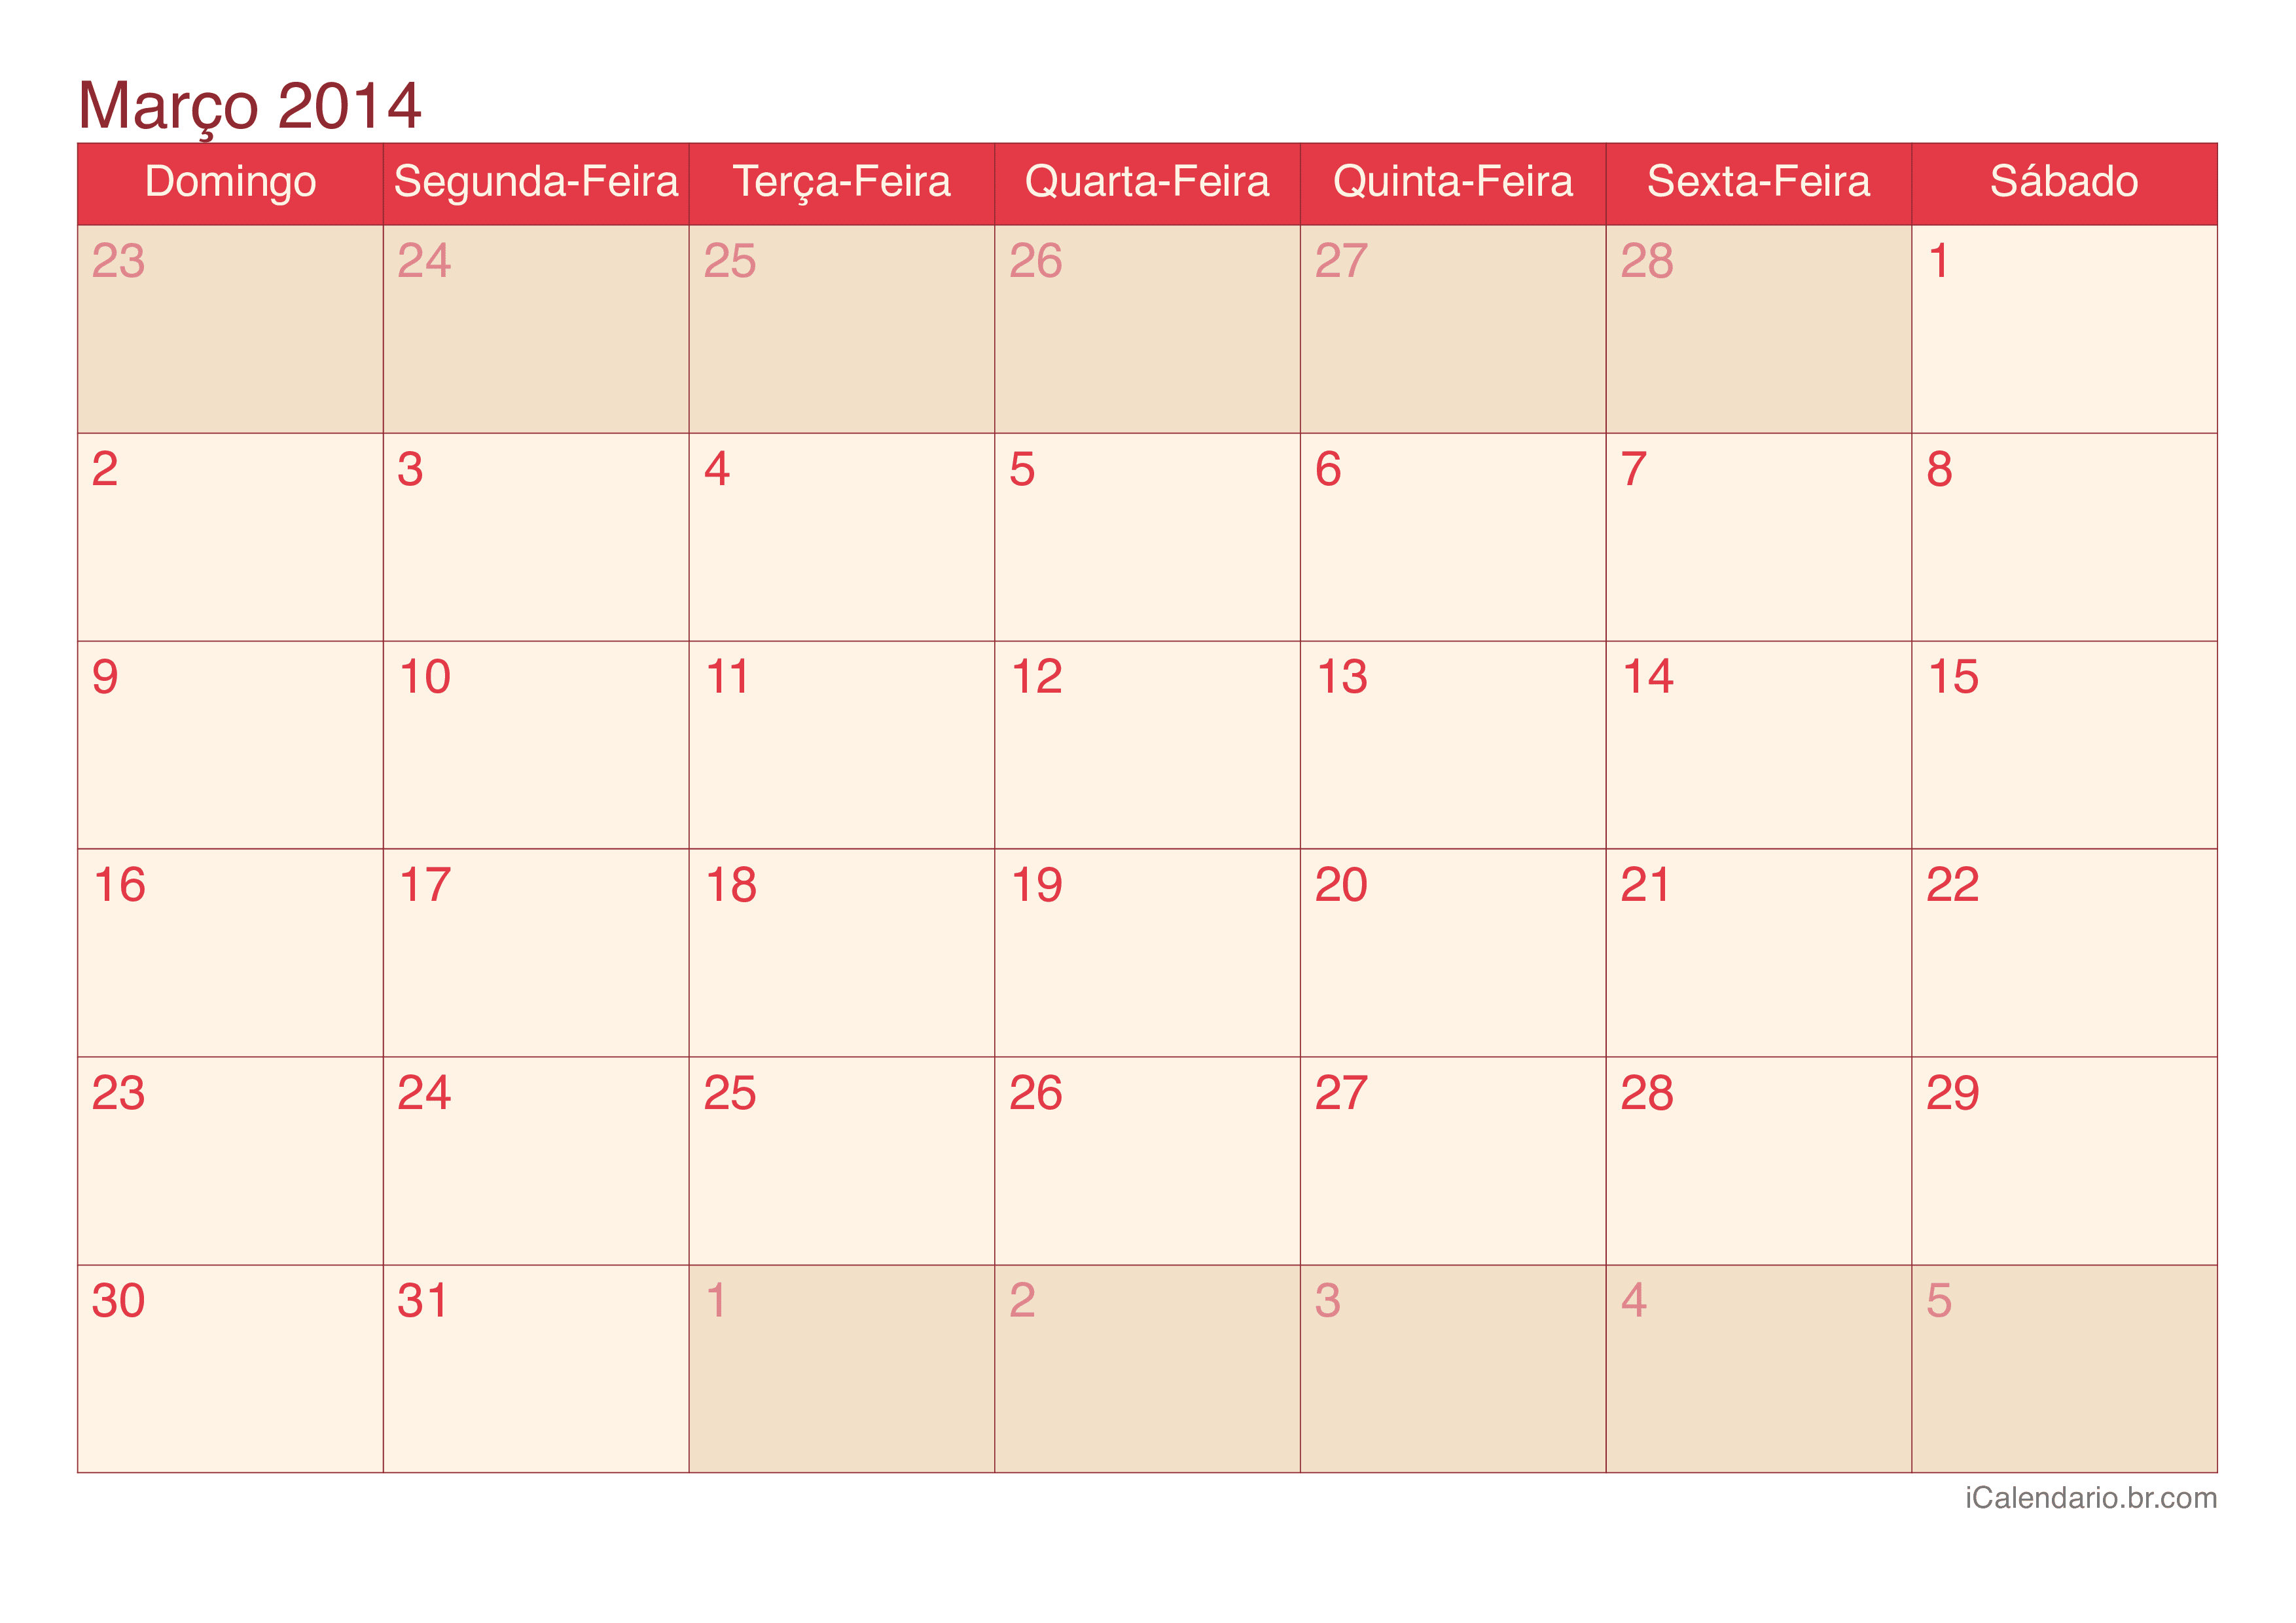 Calendário de março 2014 - Cherry